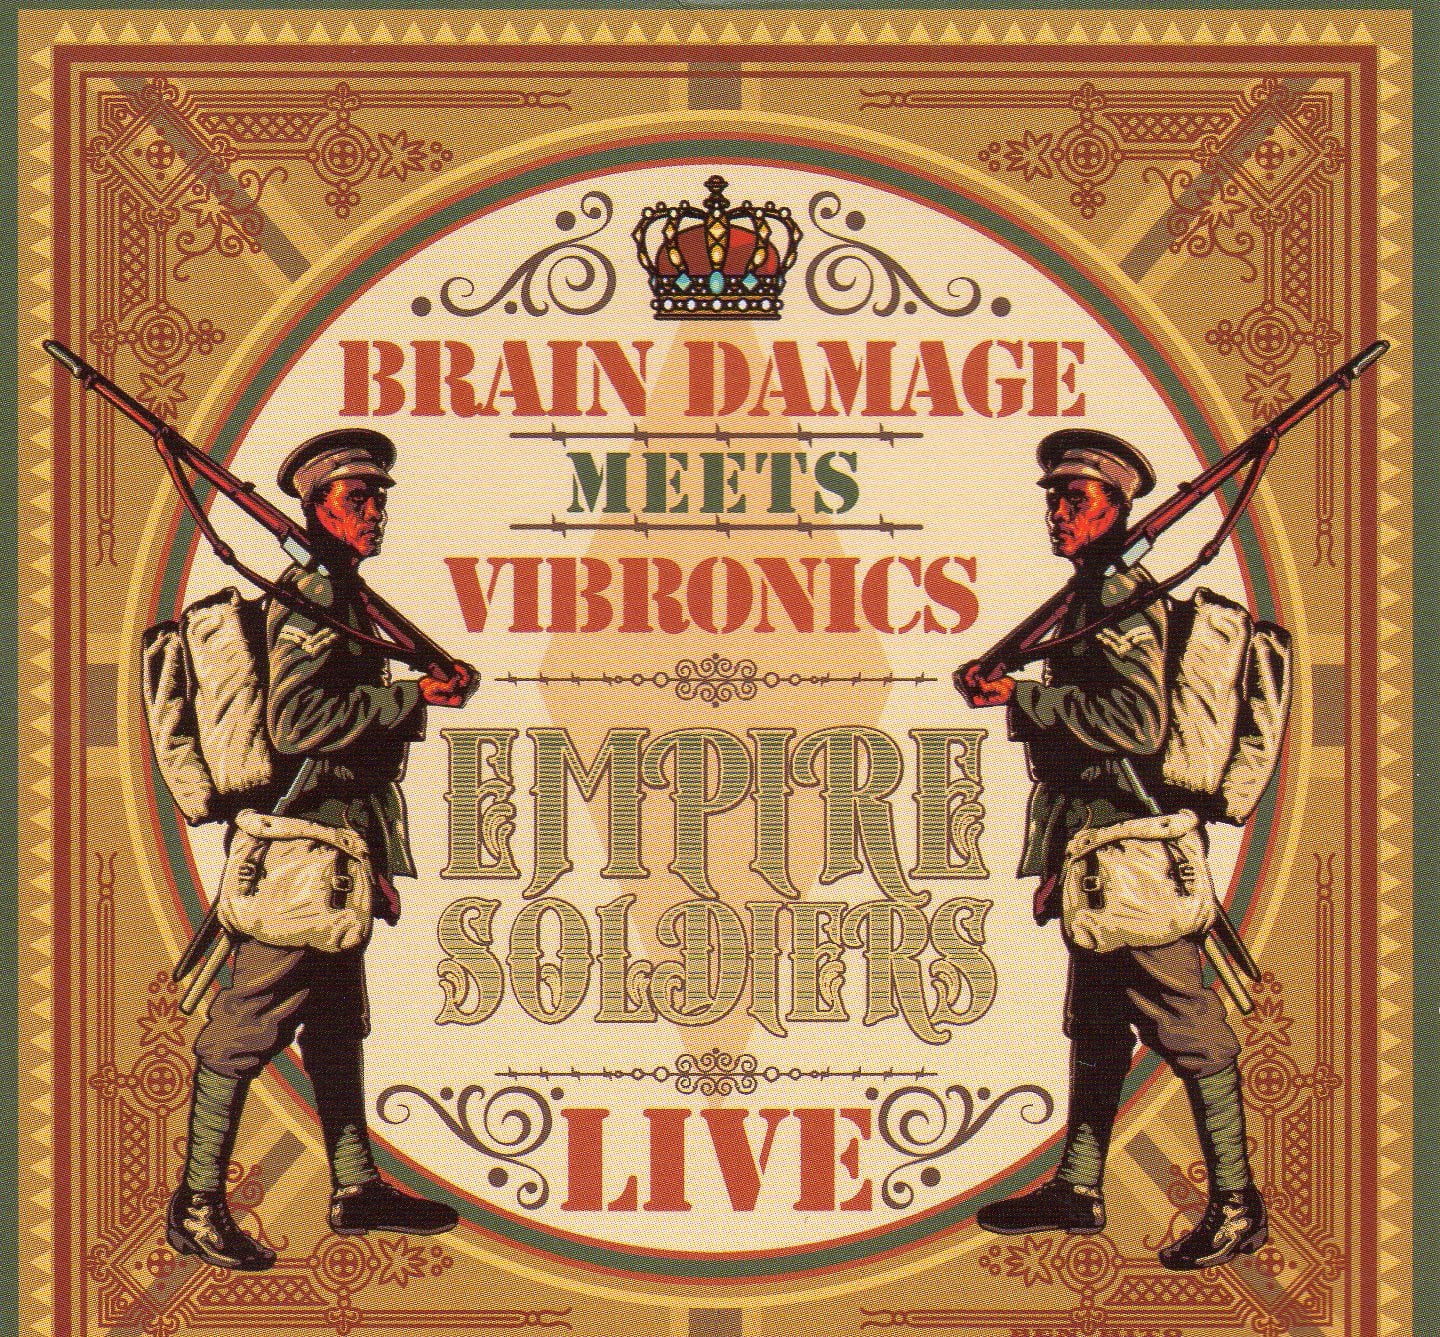 pochette-cover-artiste-Brain Damage Meets Vibronics-album-Empire Soldiers Live